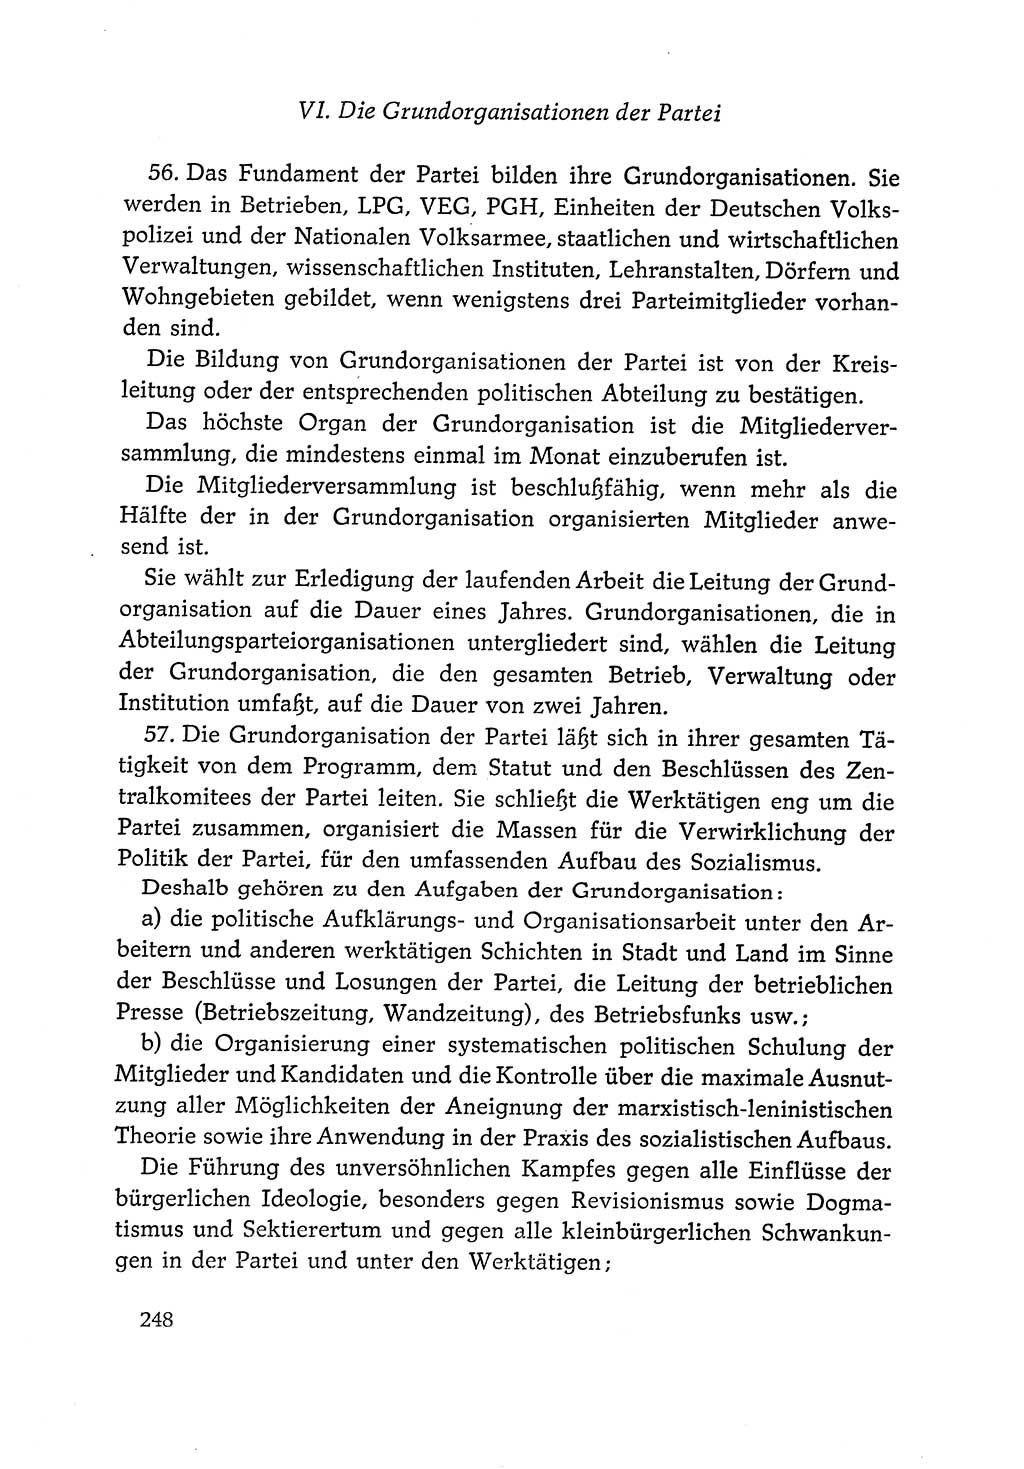 Dokumente der Sozialistischen Einheitspartei Deutschlands (SED) [Deutsche Demokratische Republik (DDR)] 1966-1967, Seite 248 (Dok. SED DDR 1966-1967, S. 248)